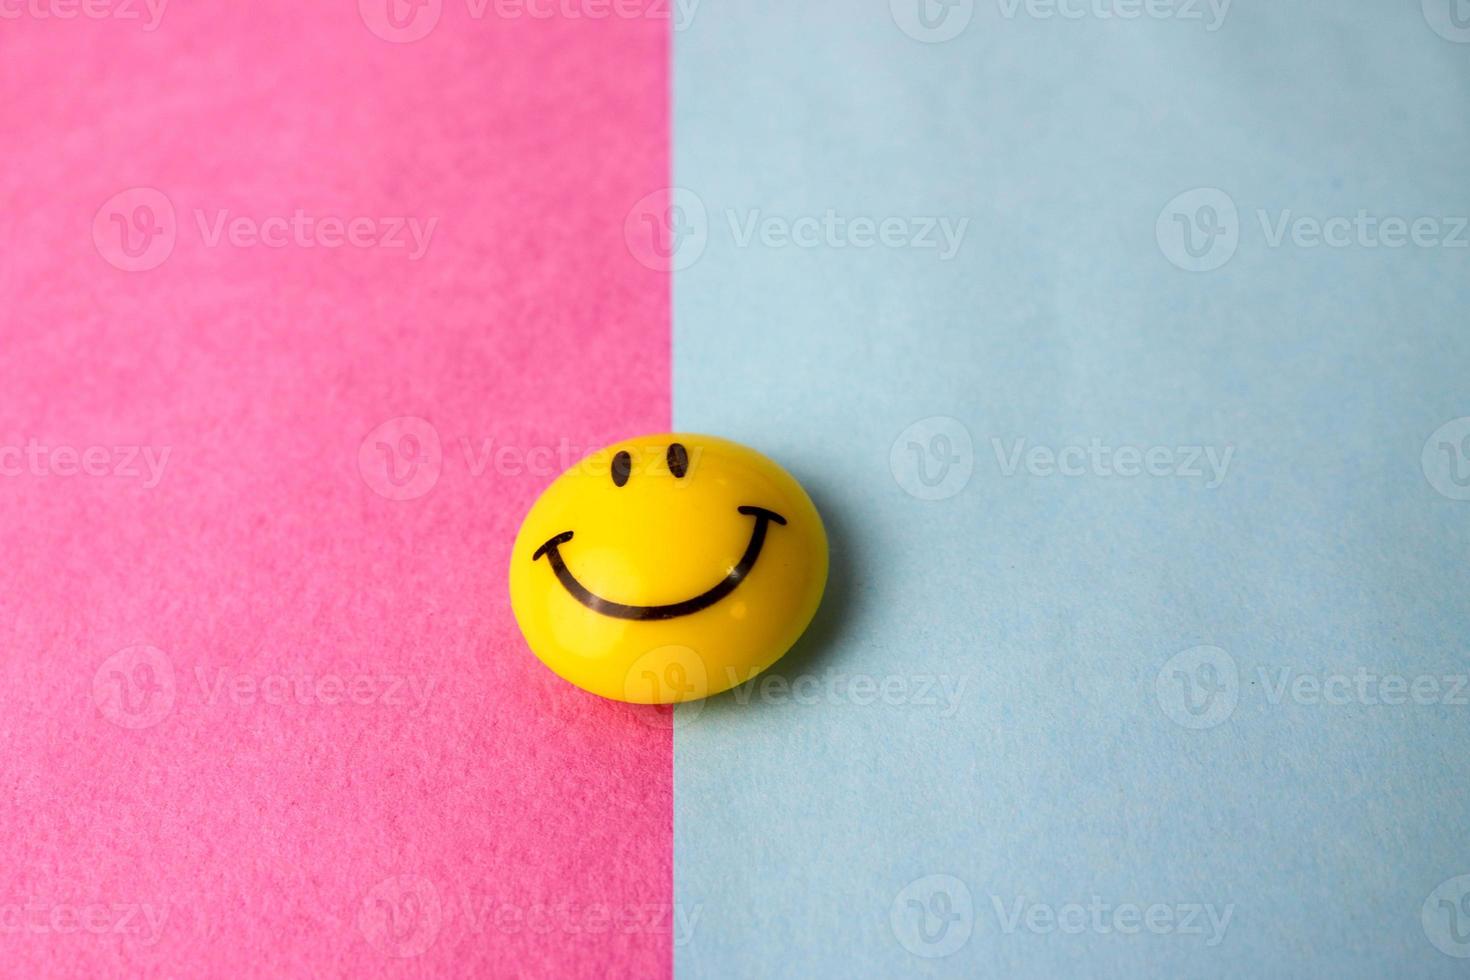 plástico redondo amarillo alegre sonriente juguete sonriente cara redonda emoji sobre un fondo rosa azul violeta foto